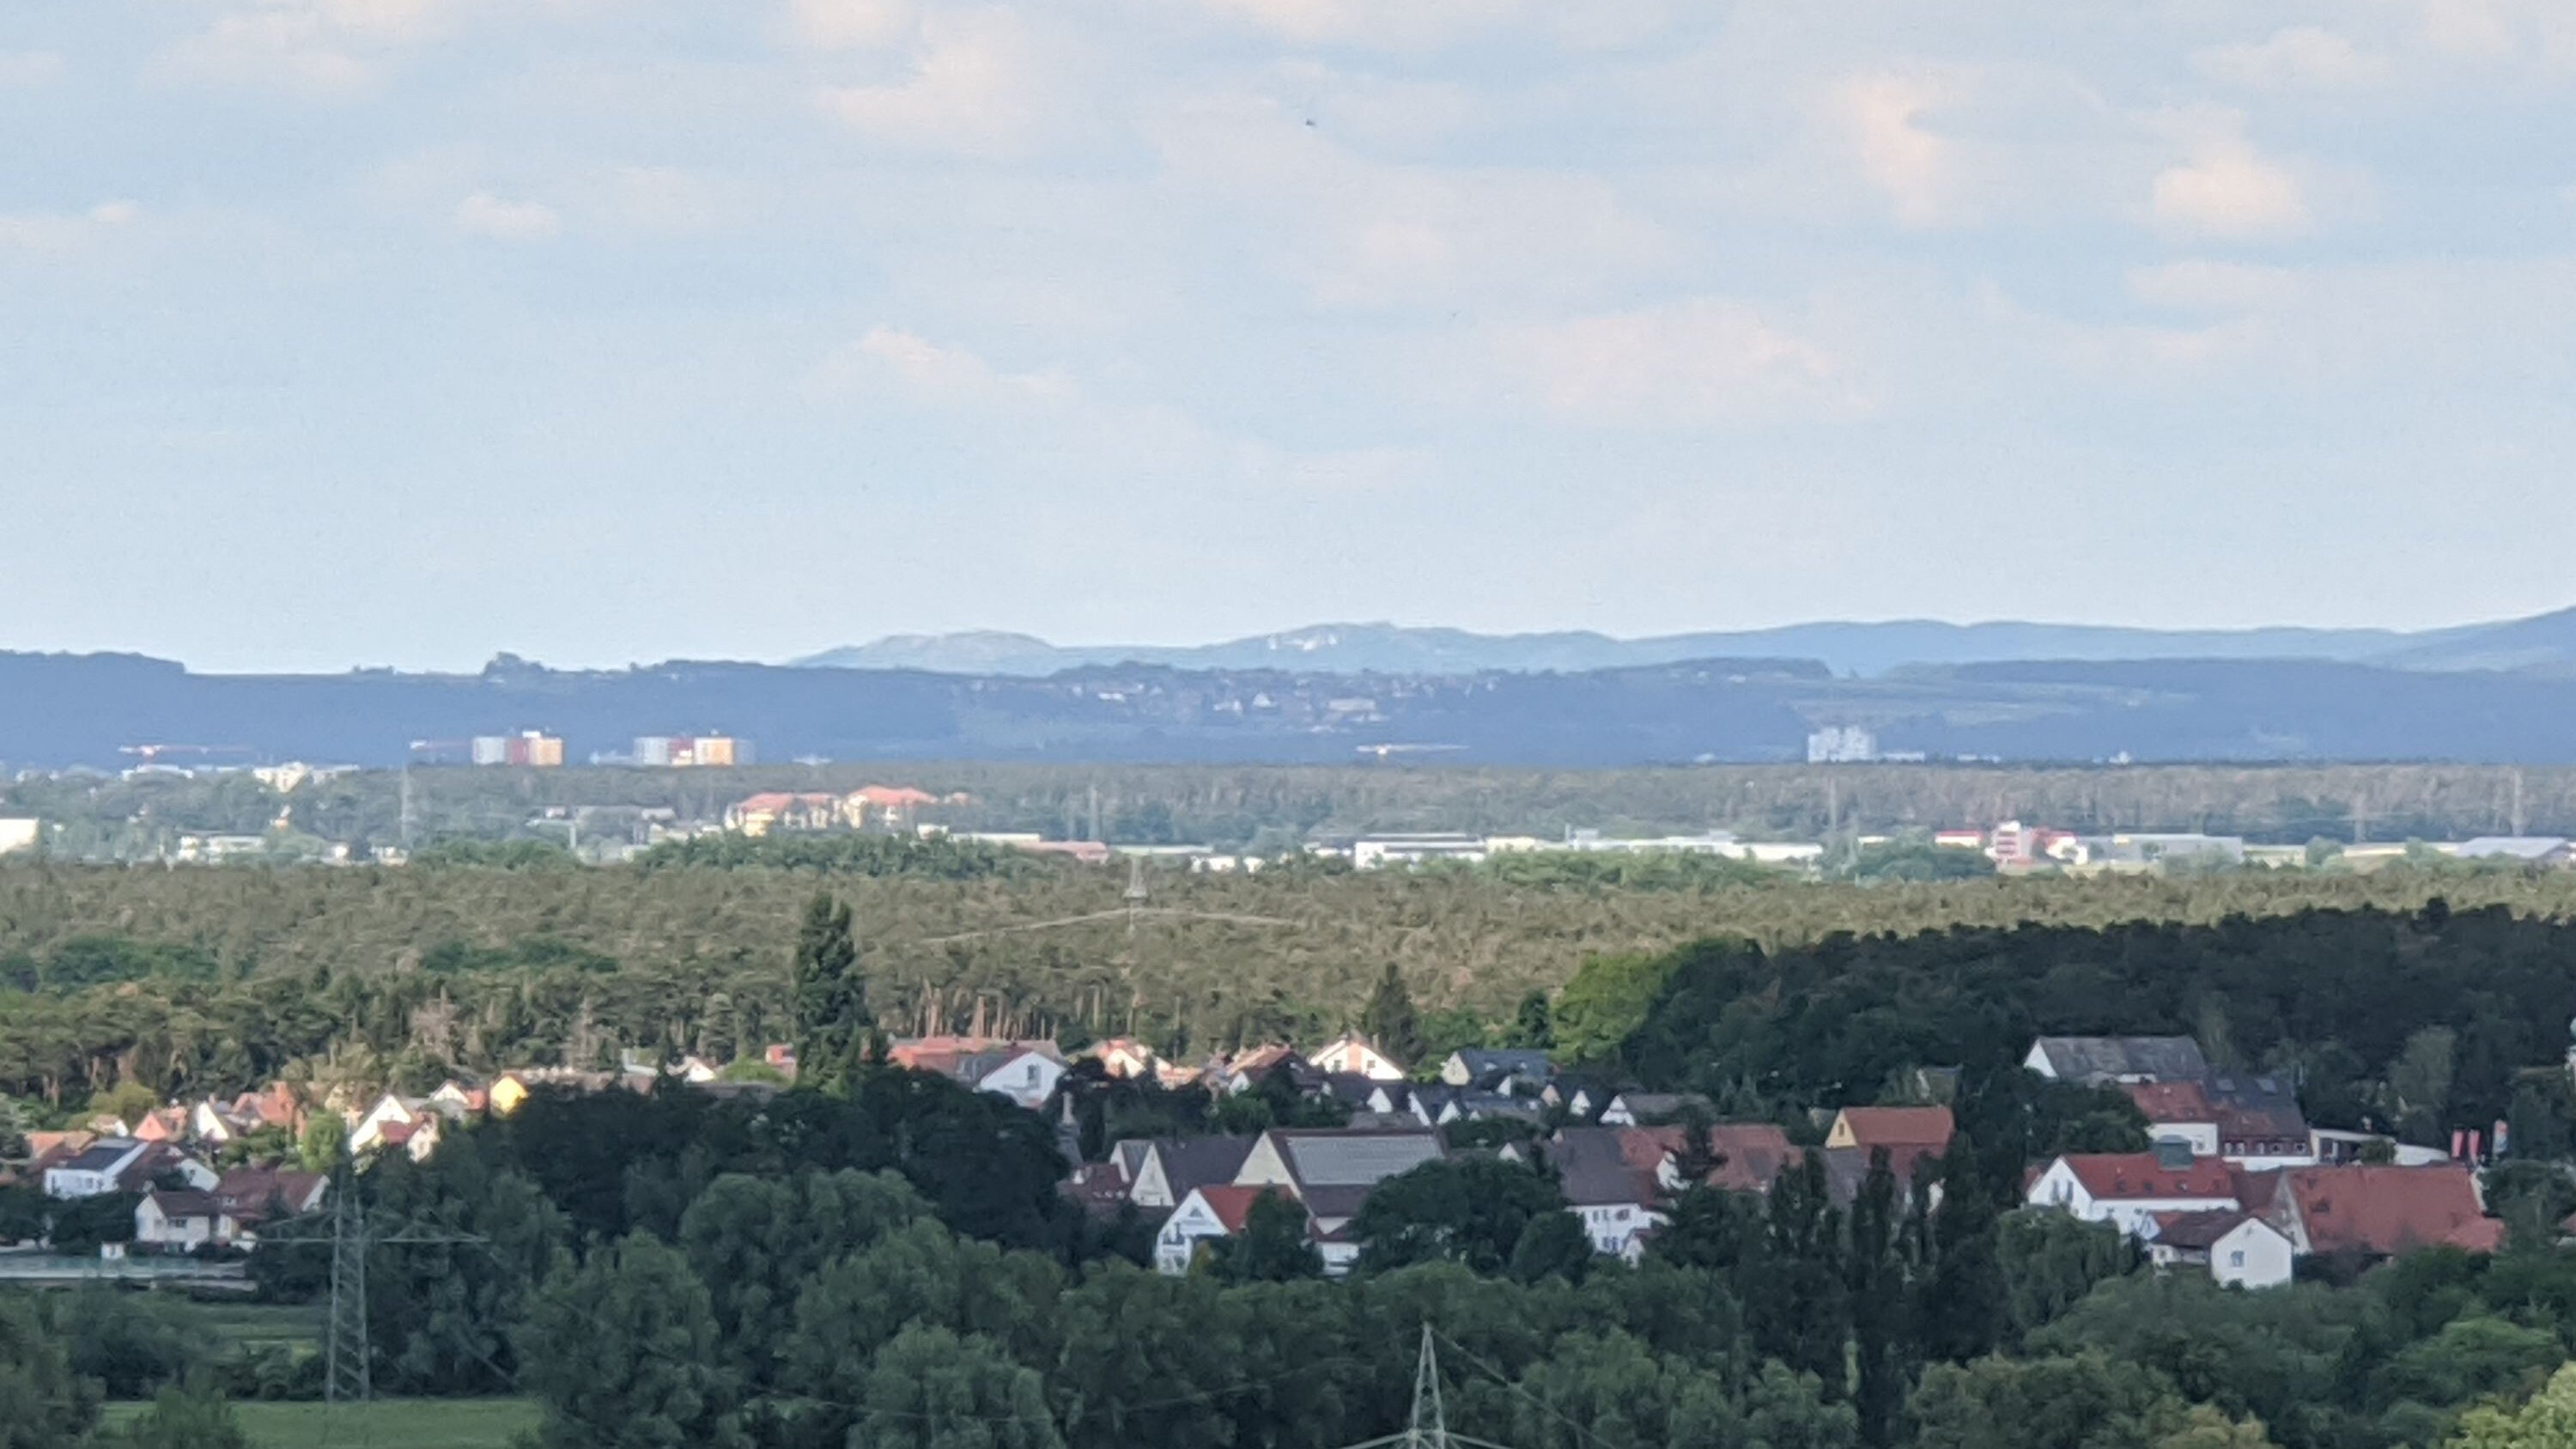 Blick vom Solarberg Fuerth in Richtung Walberla. In der Ferne Hochhaeuser Erlangens und Wlberla am Horizont